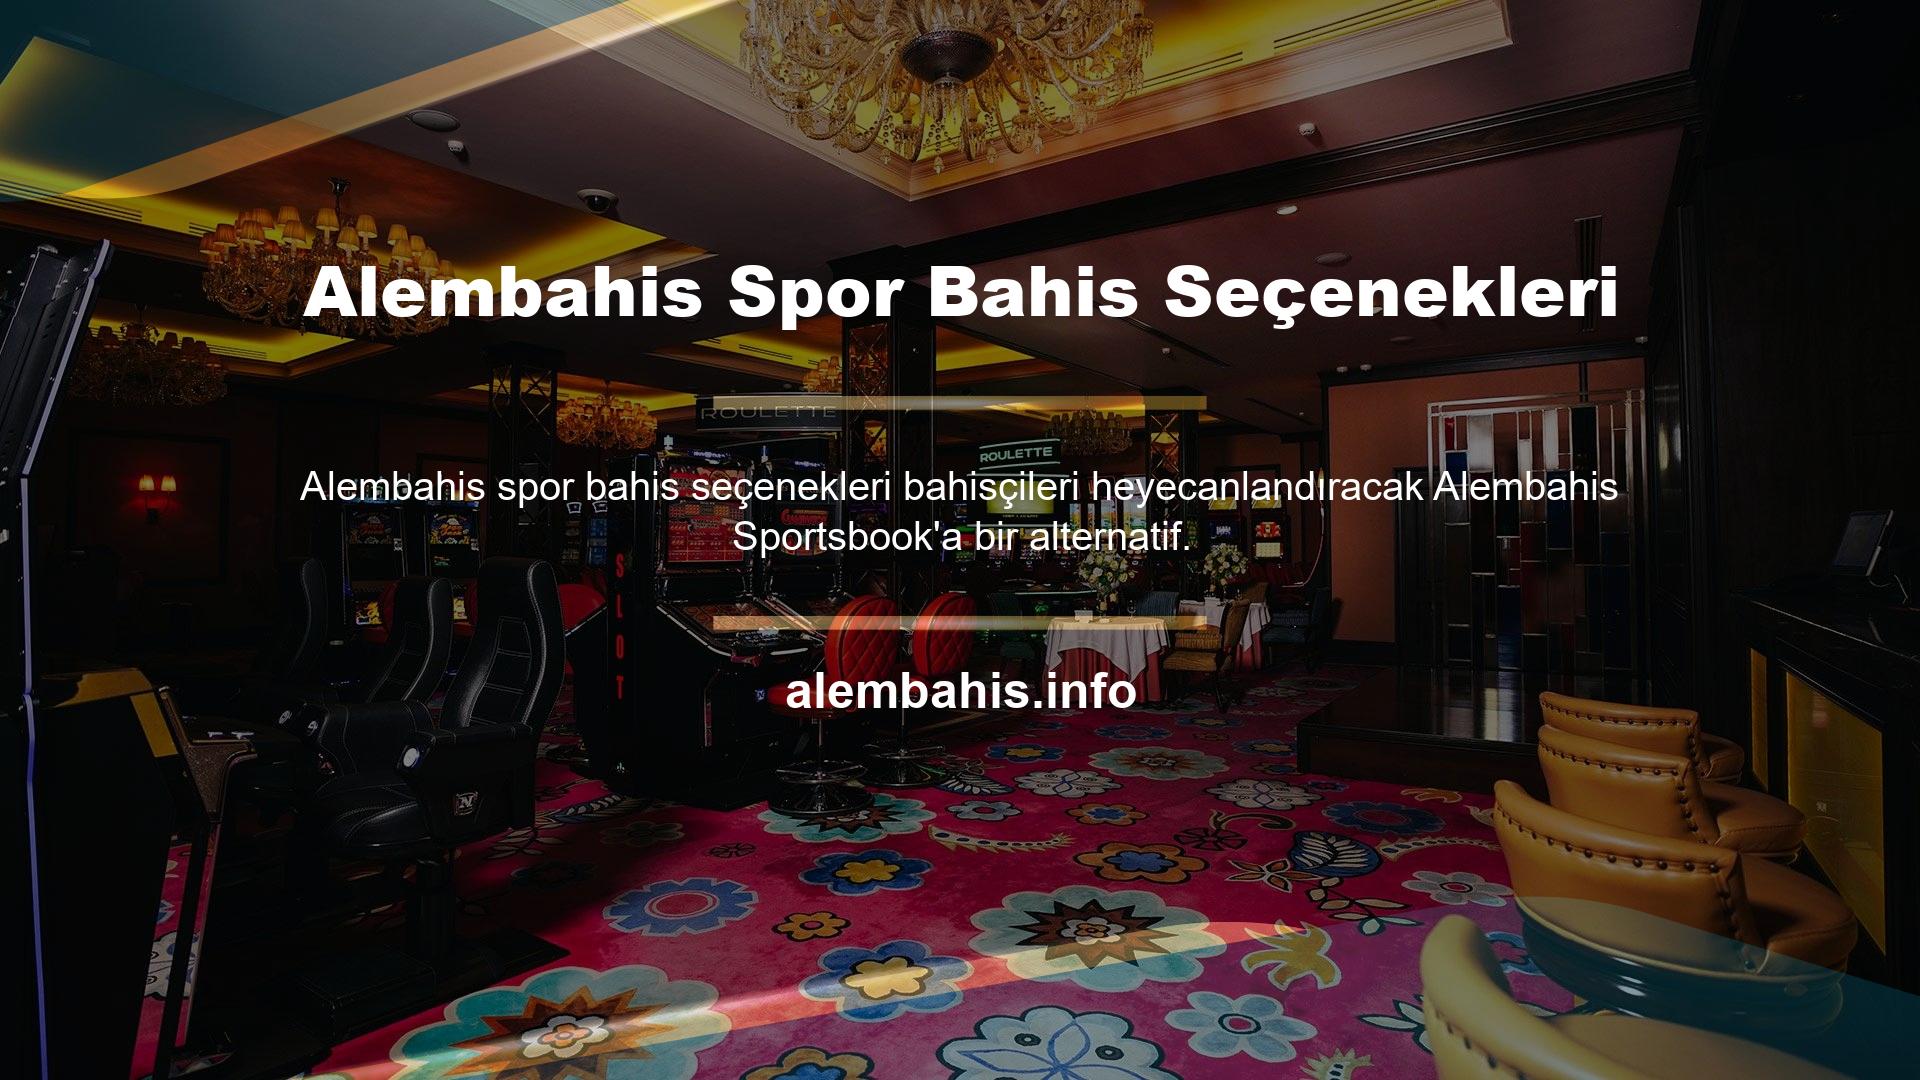 Alembahis, üyelerine alternatif sporlarda geniş bir yelpazede yüksek oranlar sunan, Avrupa ve Türkiye'nin önde gelen spor bahisleri ve casinodur